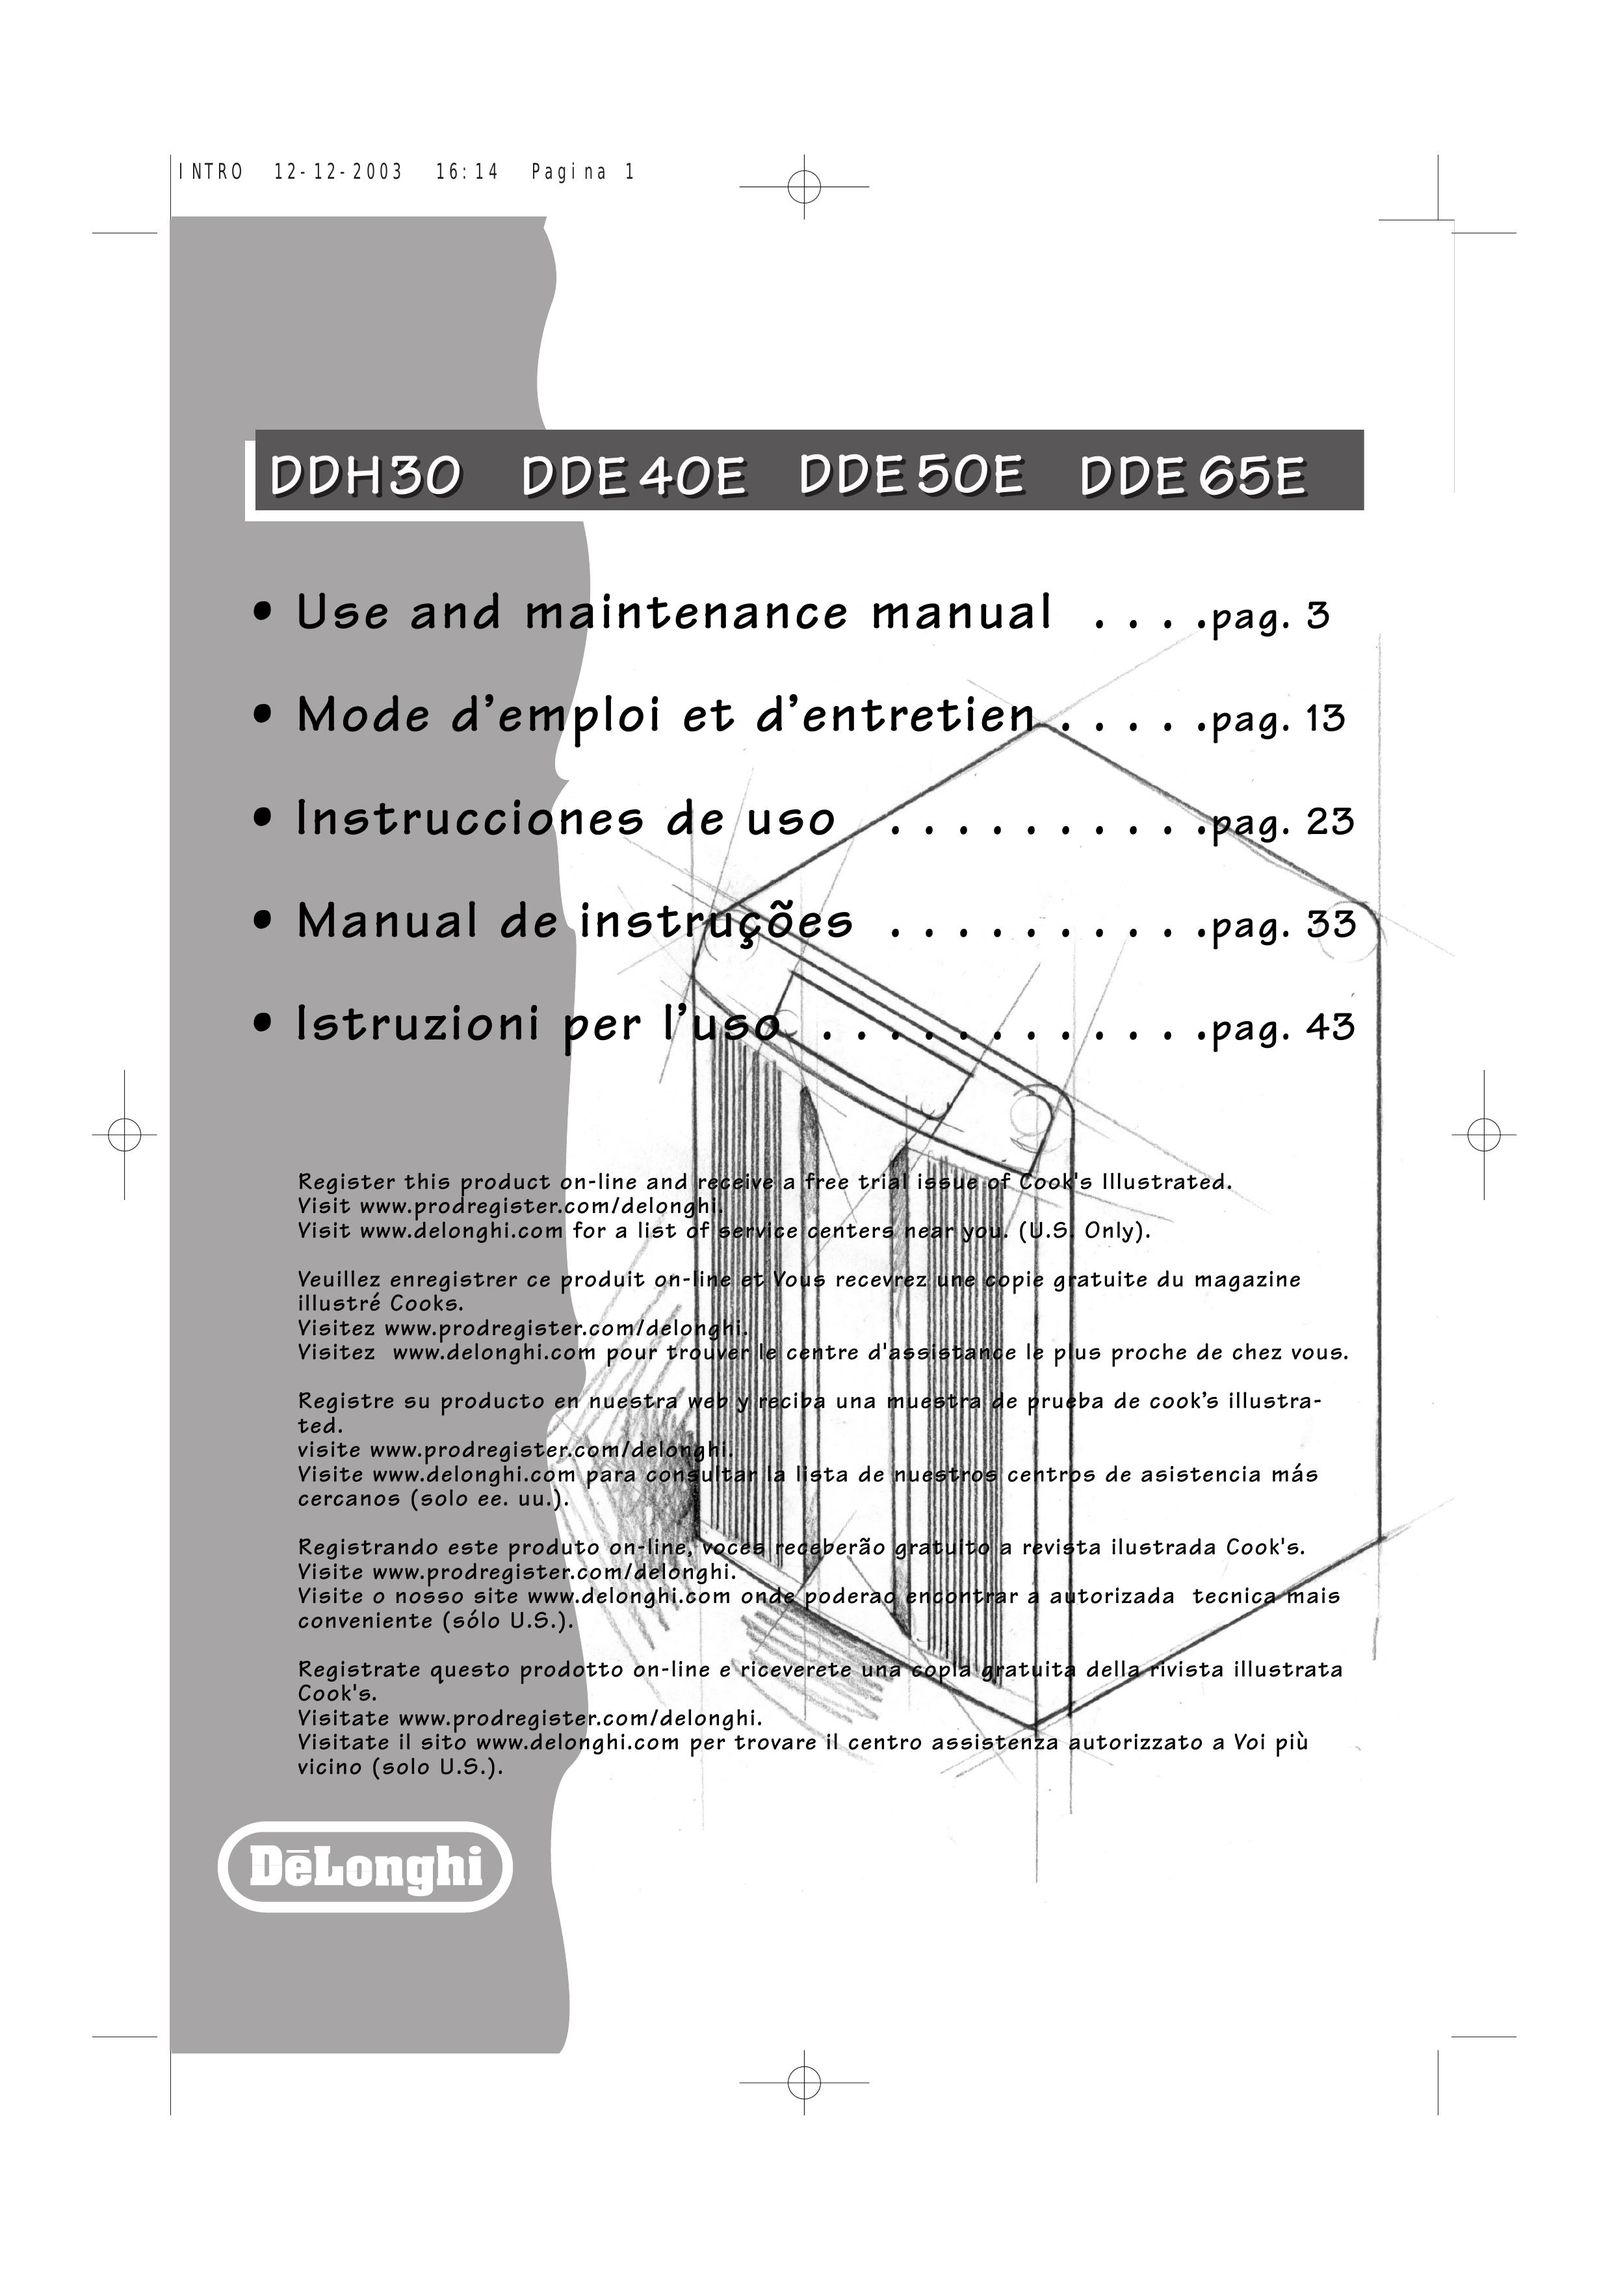 DeLonghi 50EDDE Air Cleaner User Manual